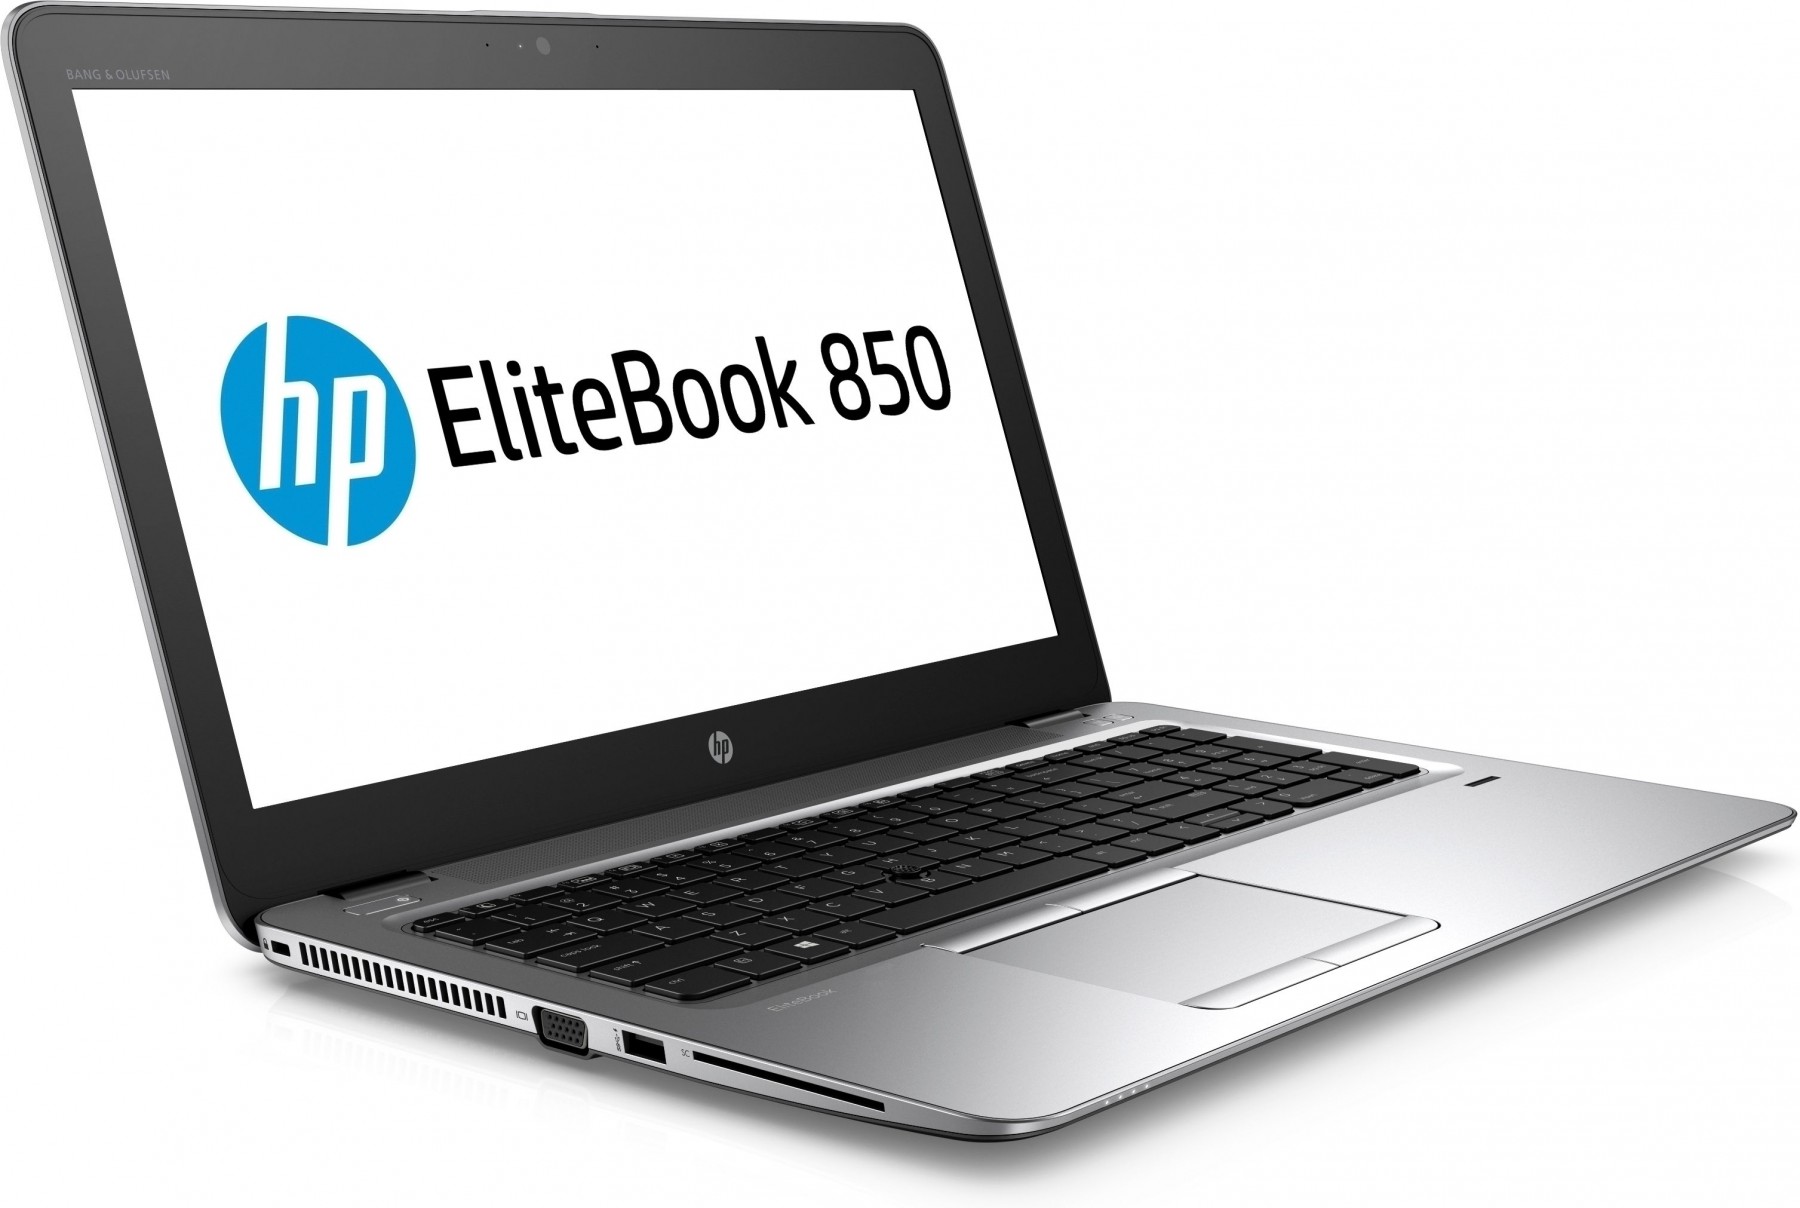 HP EliteBook 850 G3 Intel Core i5-6200U 8GB RAM 256GB SDD 15.6